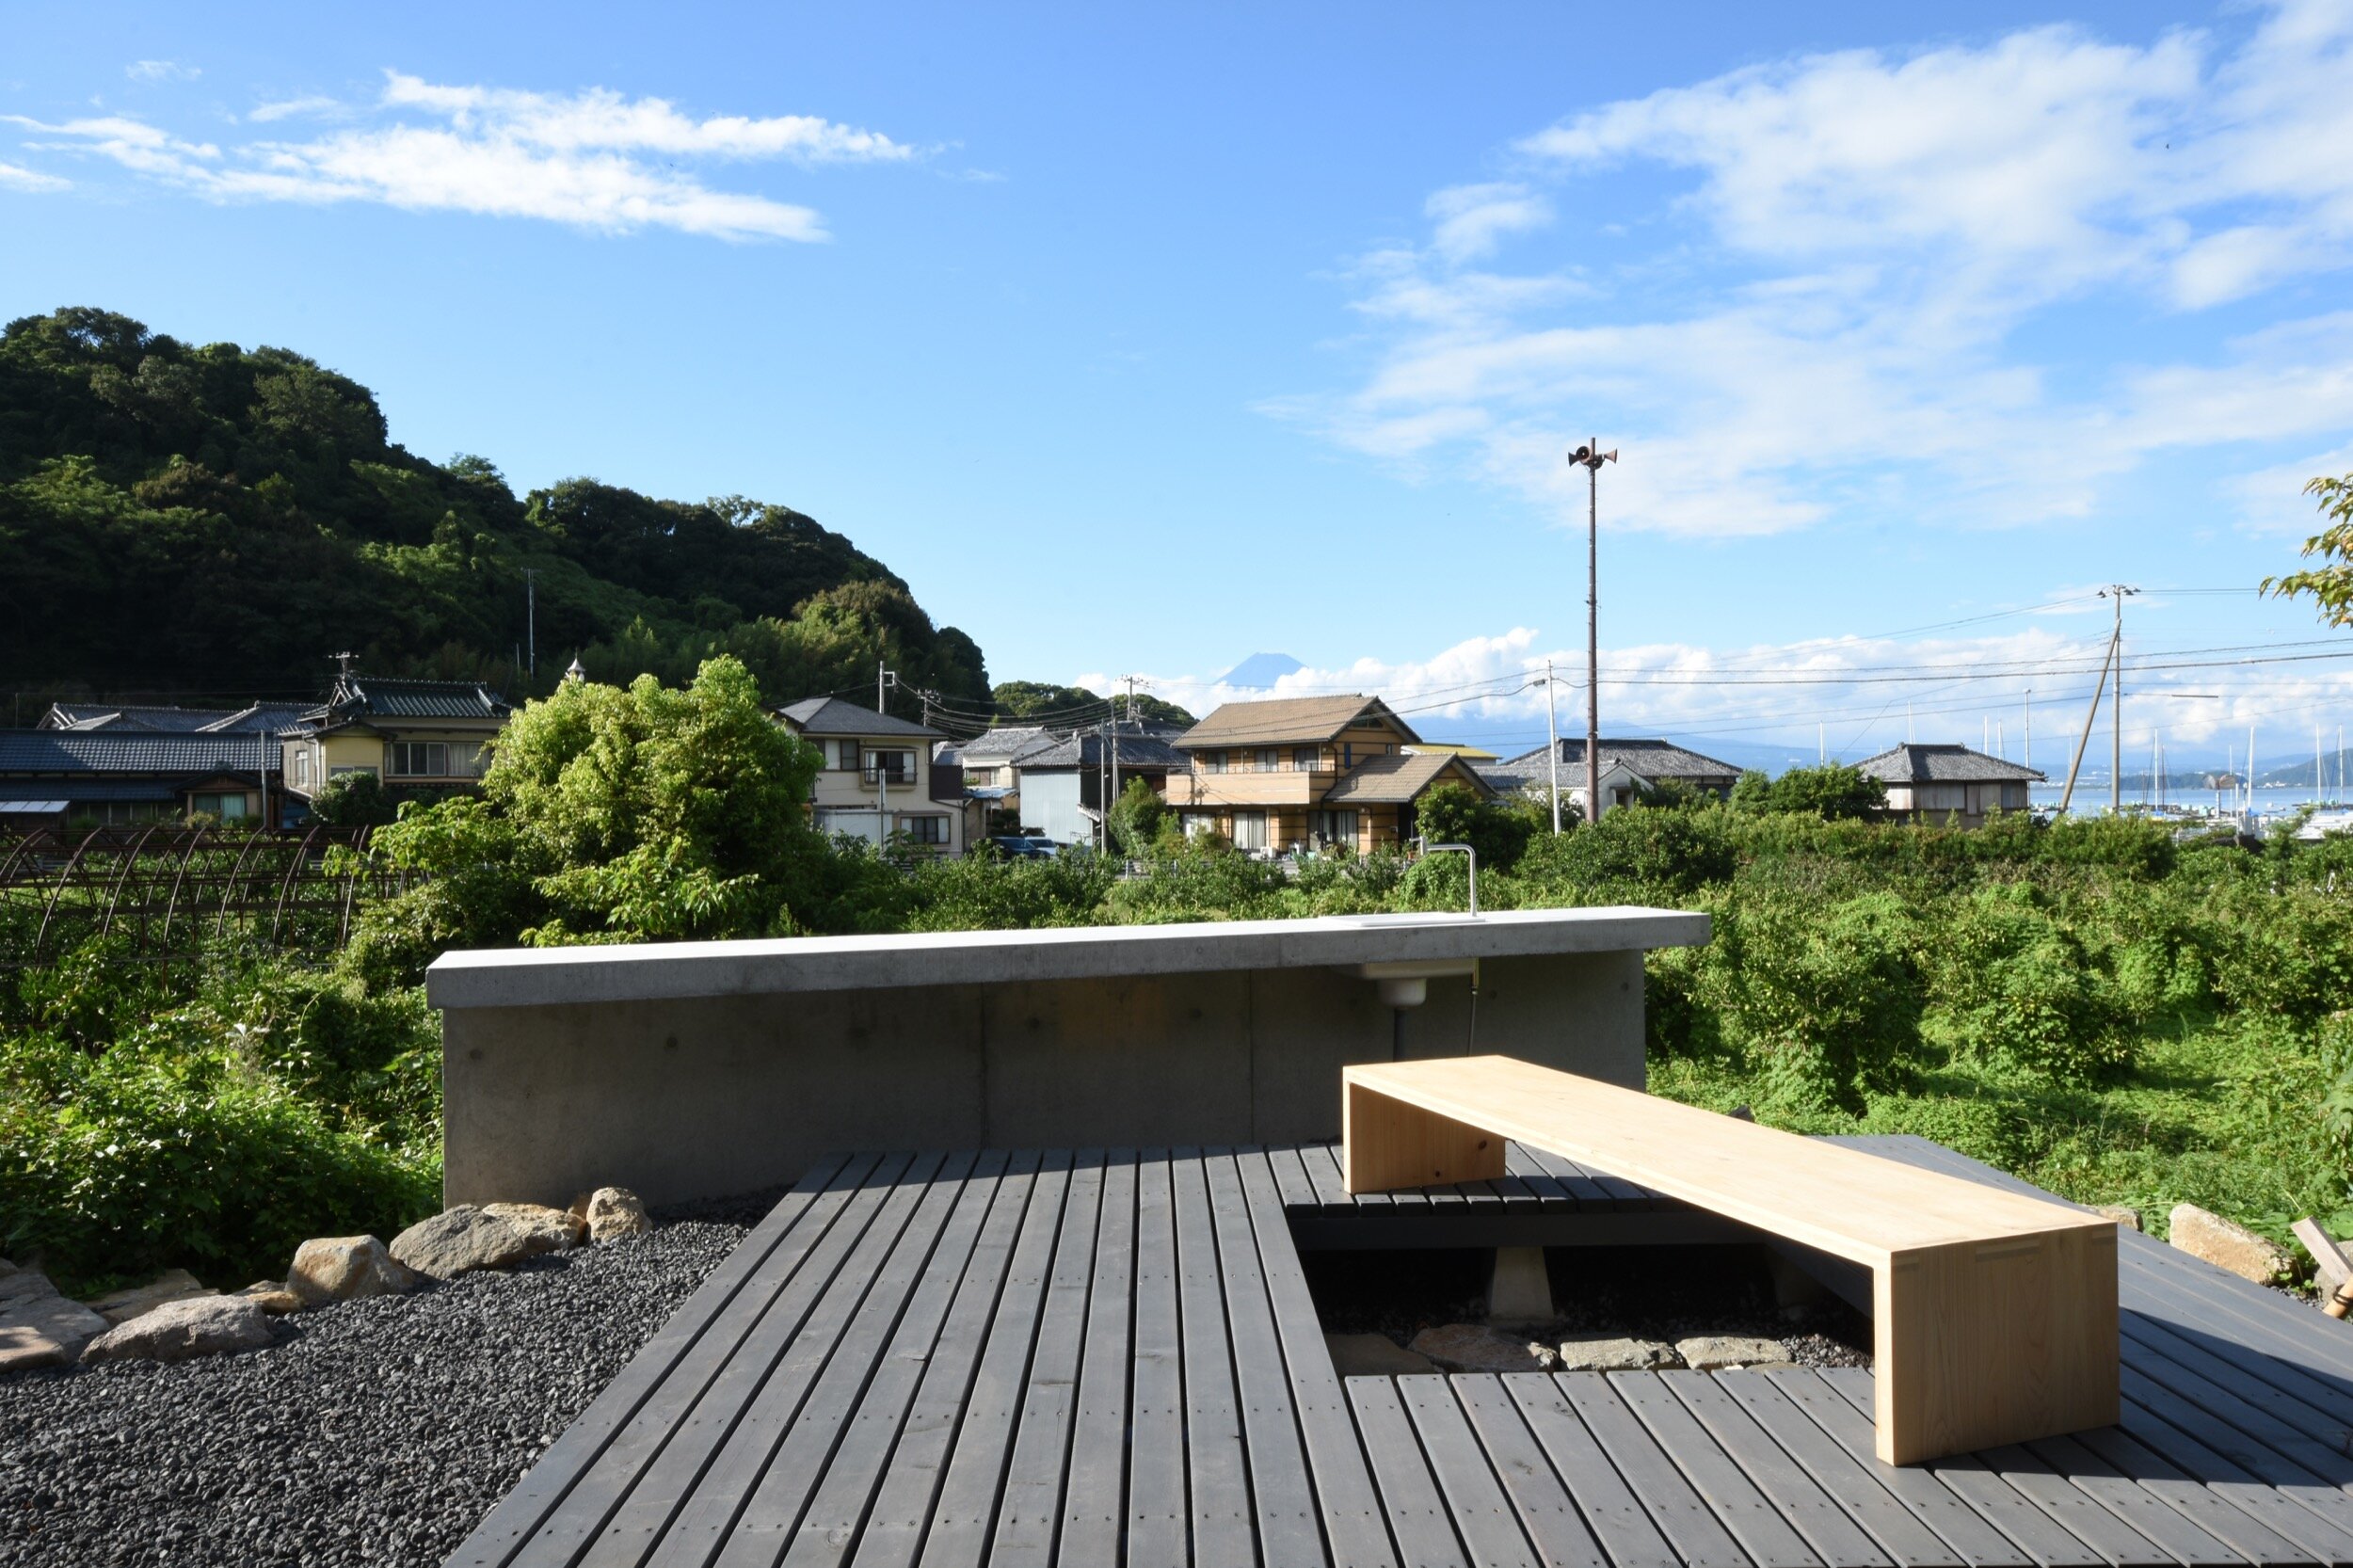 koizumi-studio-house-in-nishiura-interior-design-magazine-idreit-228ks.jpg